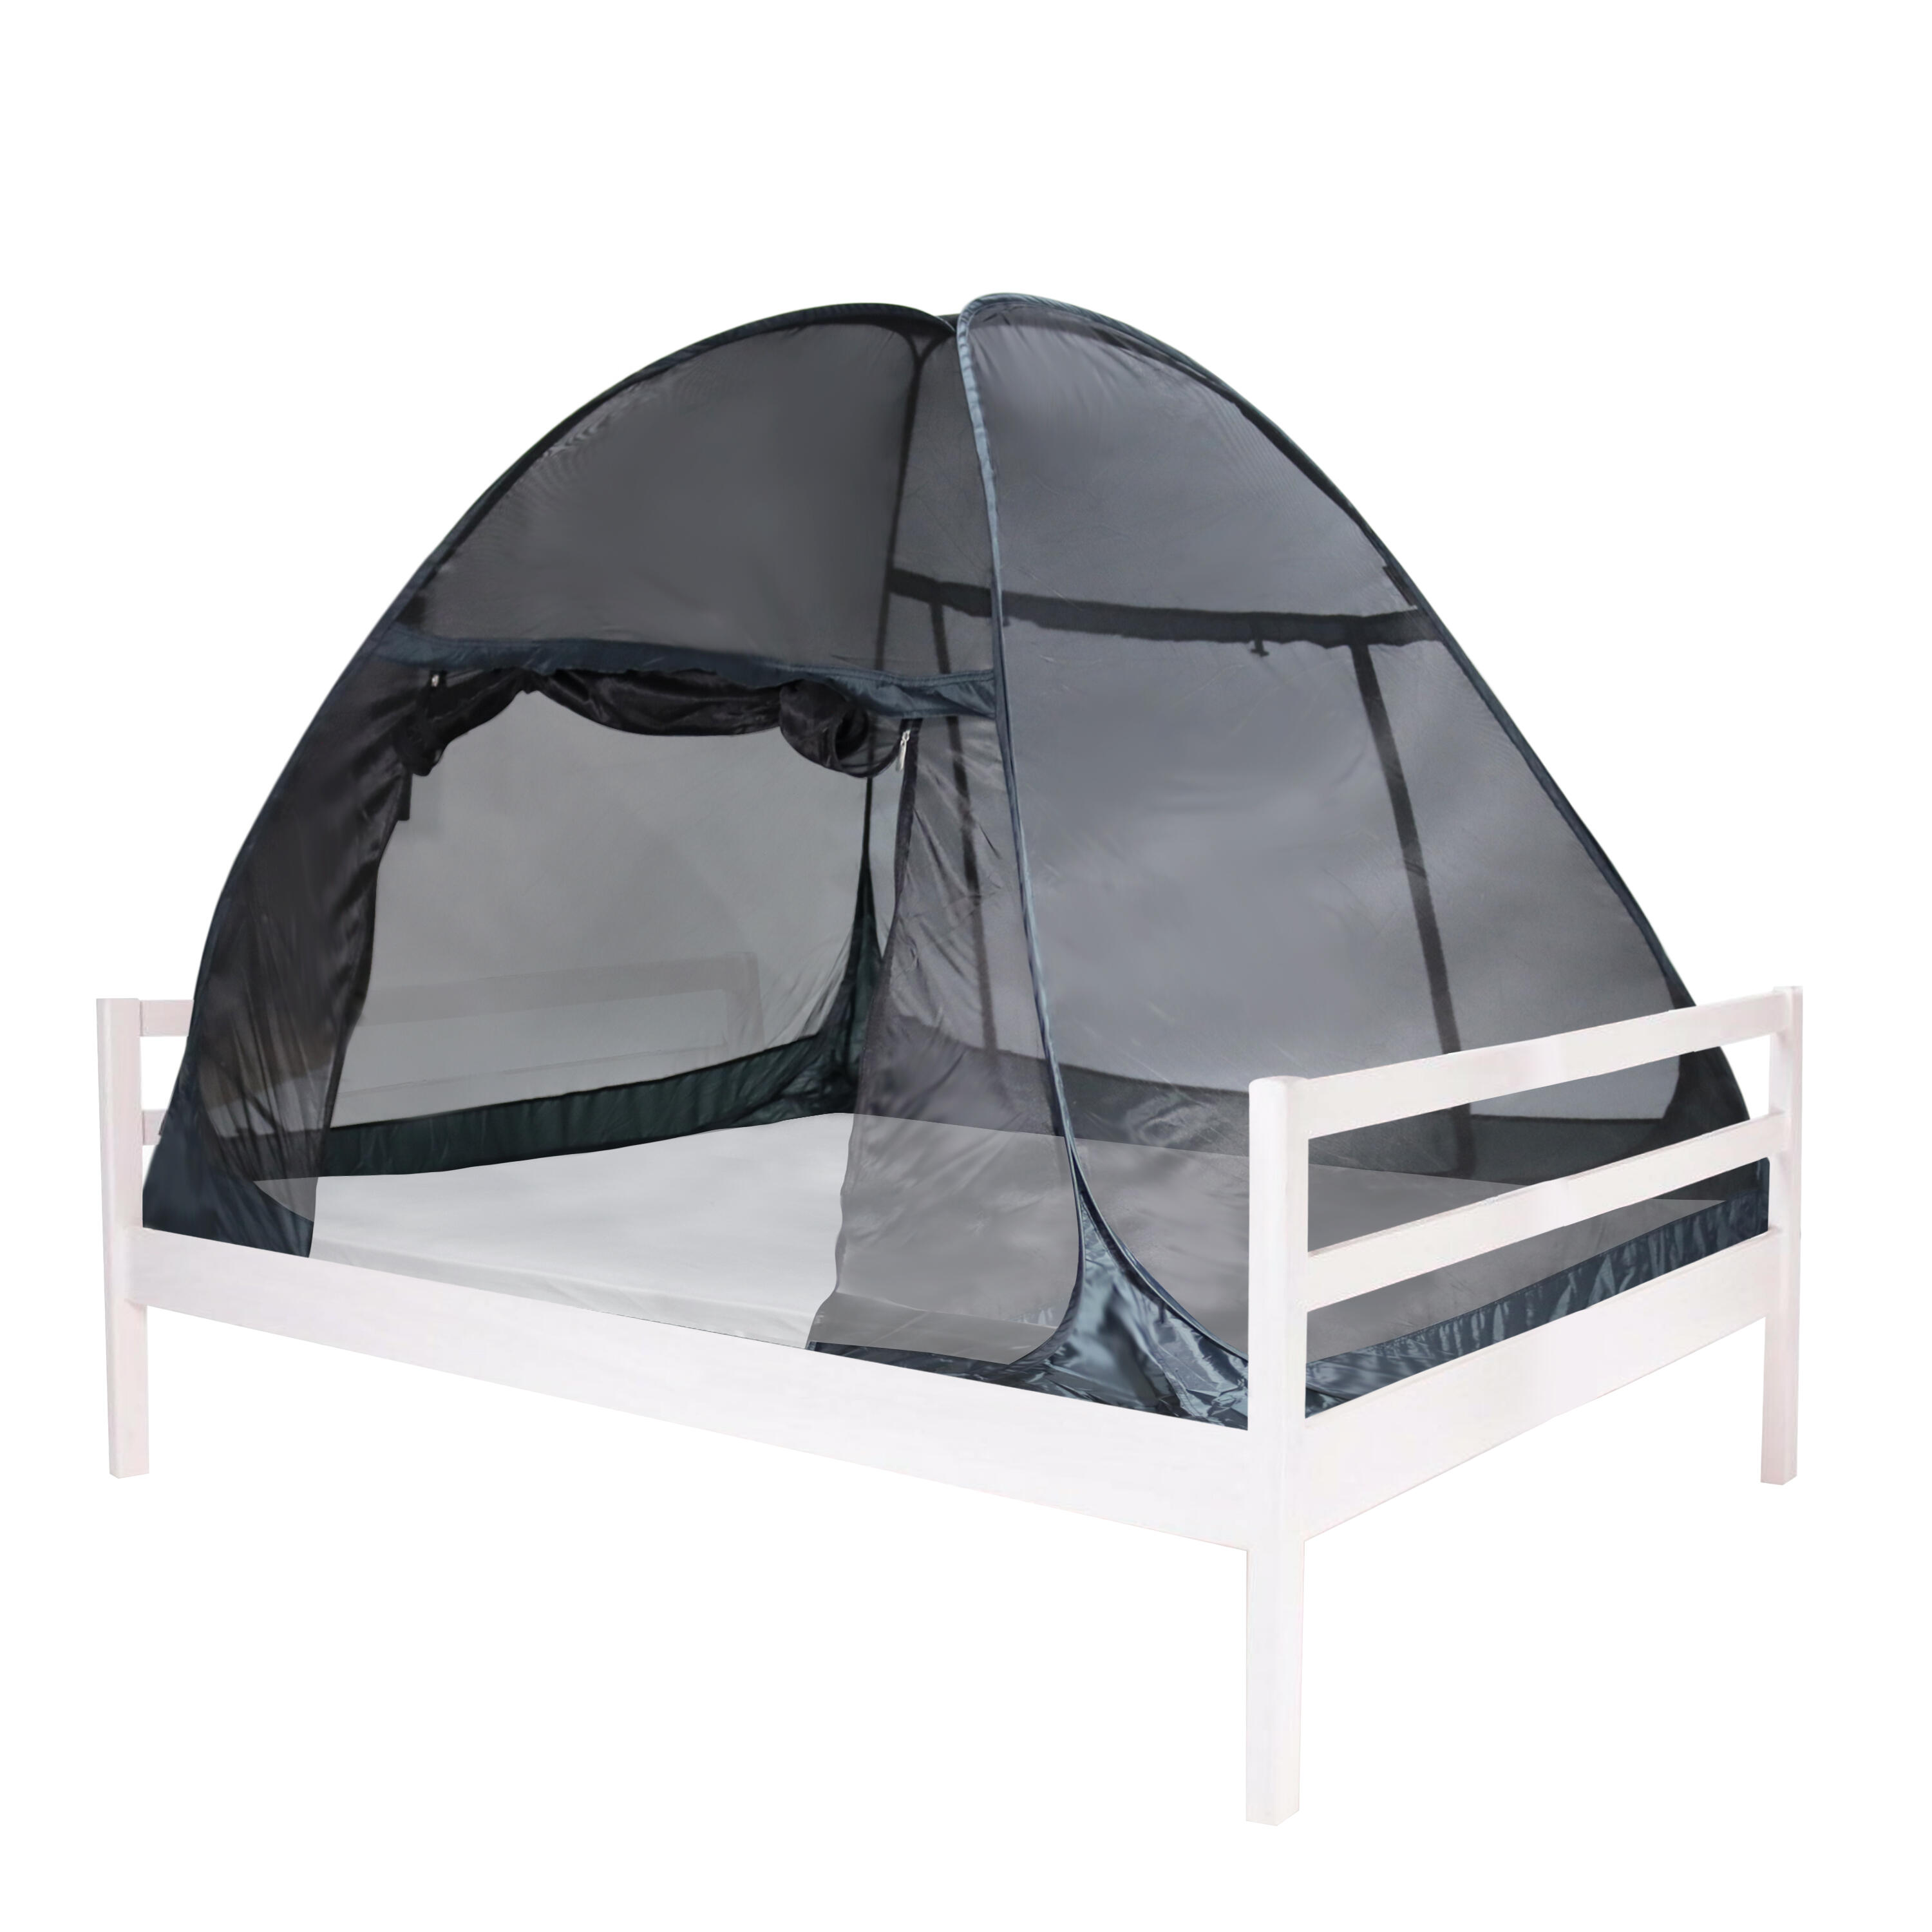 Москитная сетка Deryan для палатки высочайшего качества 200x180 см, черный фотографии